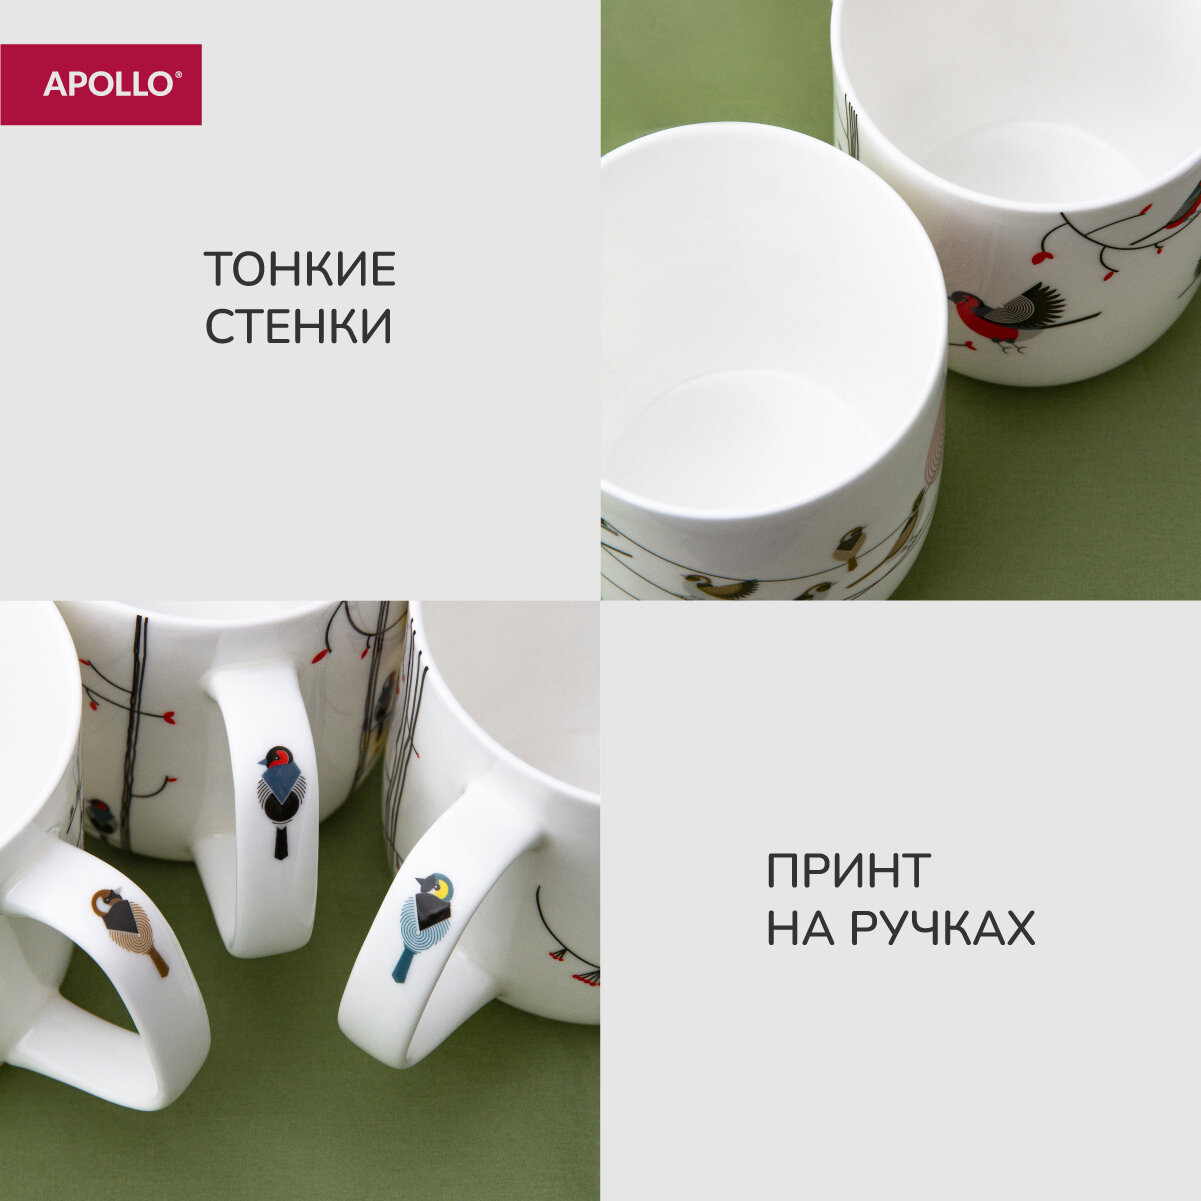 Кружка фарфоровая, набор чашек для чая и кофе APOLLO "Chito Basalto" 600 мл, 3 предмета